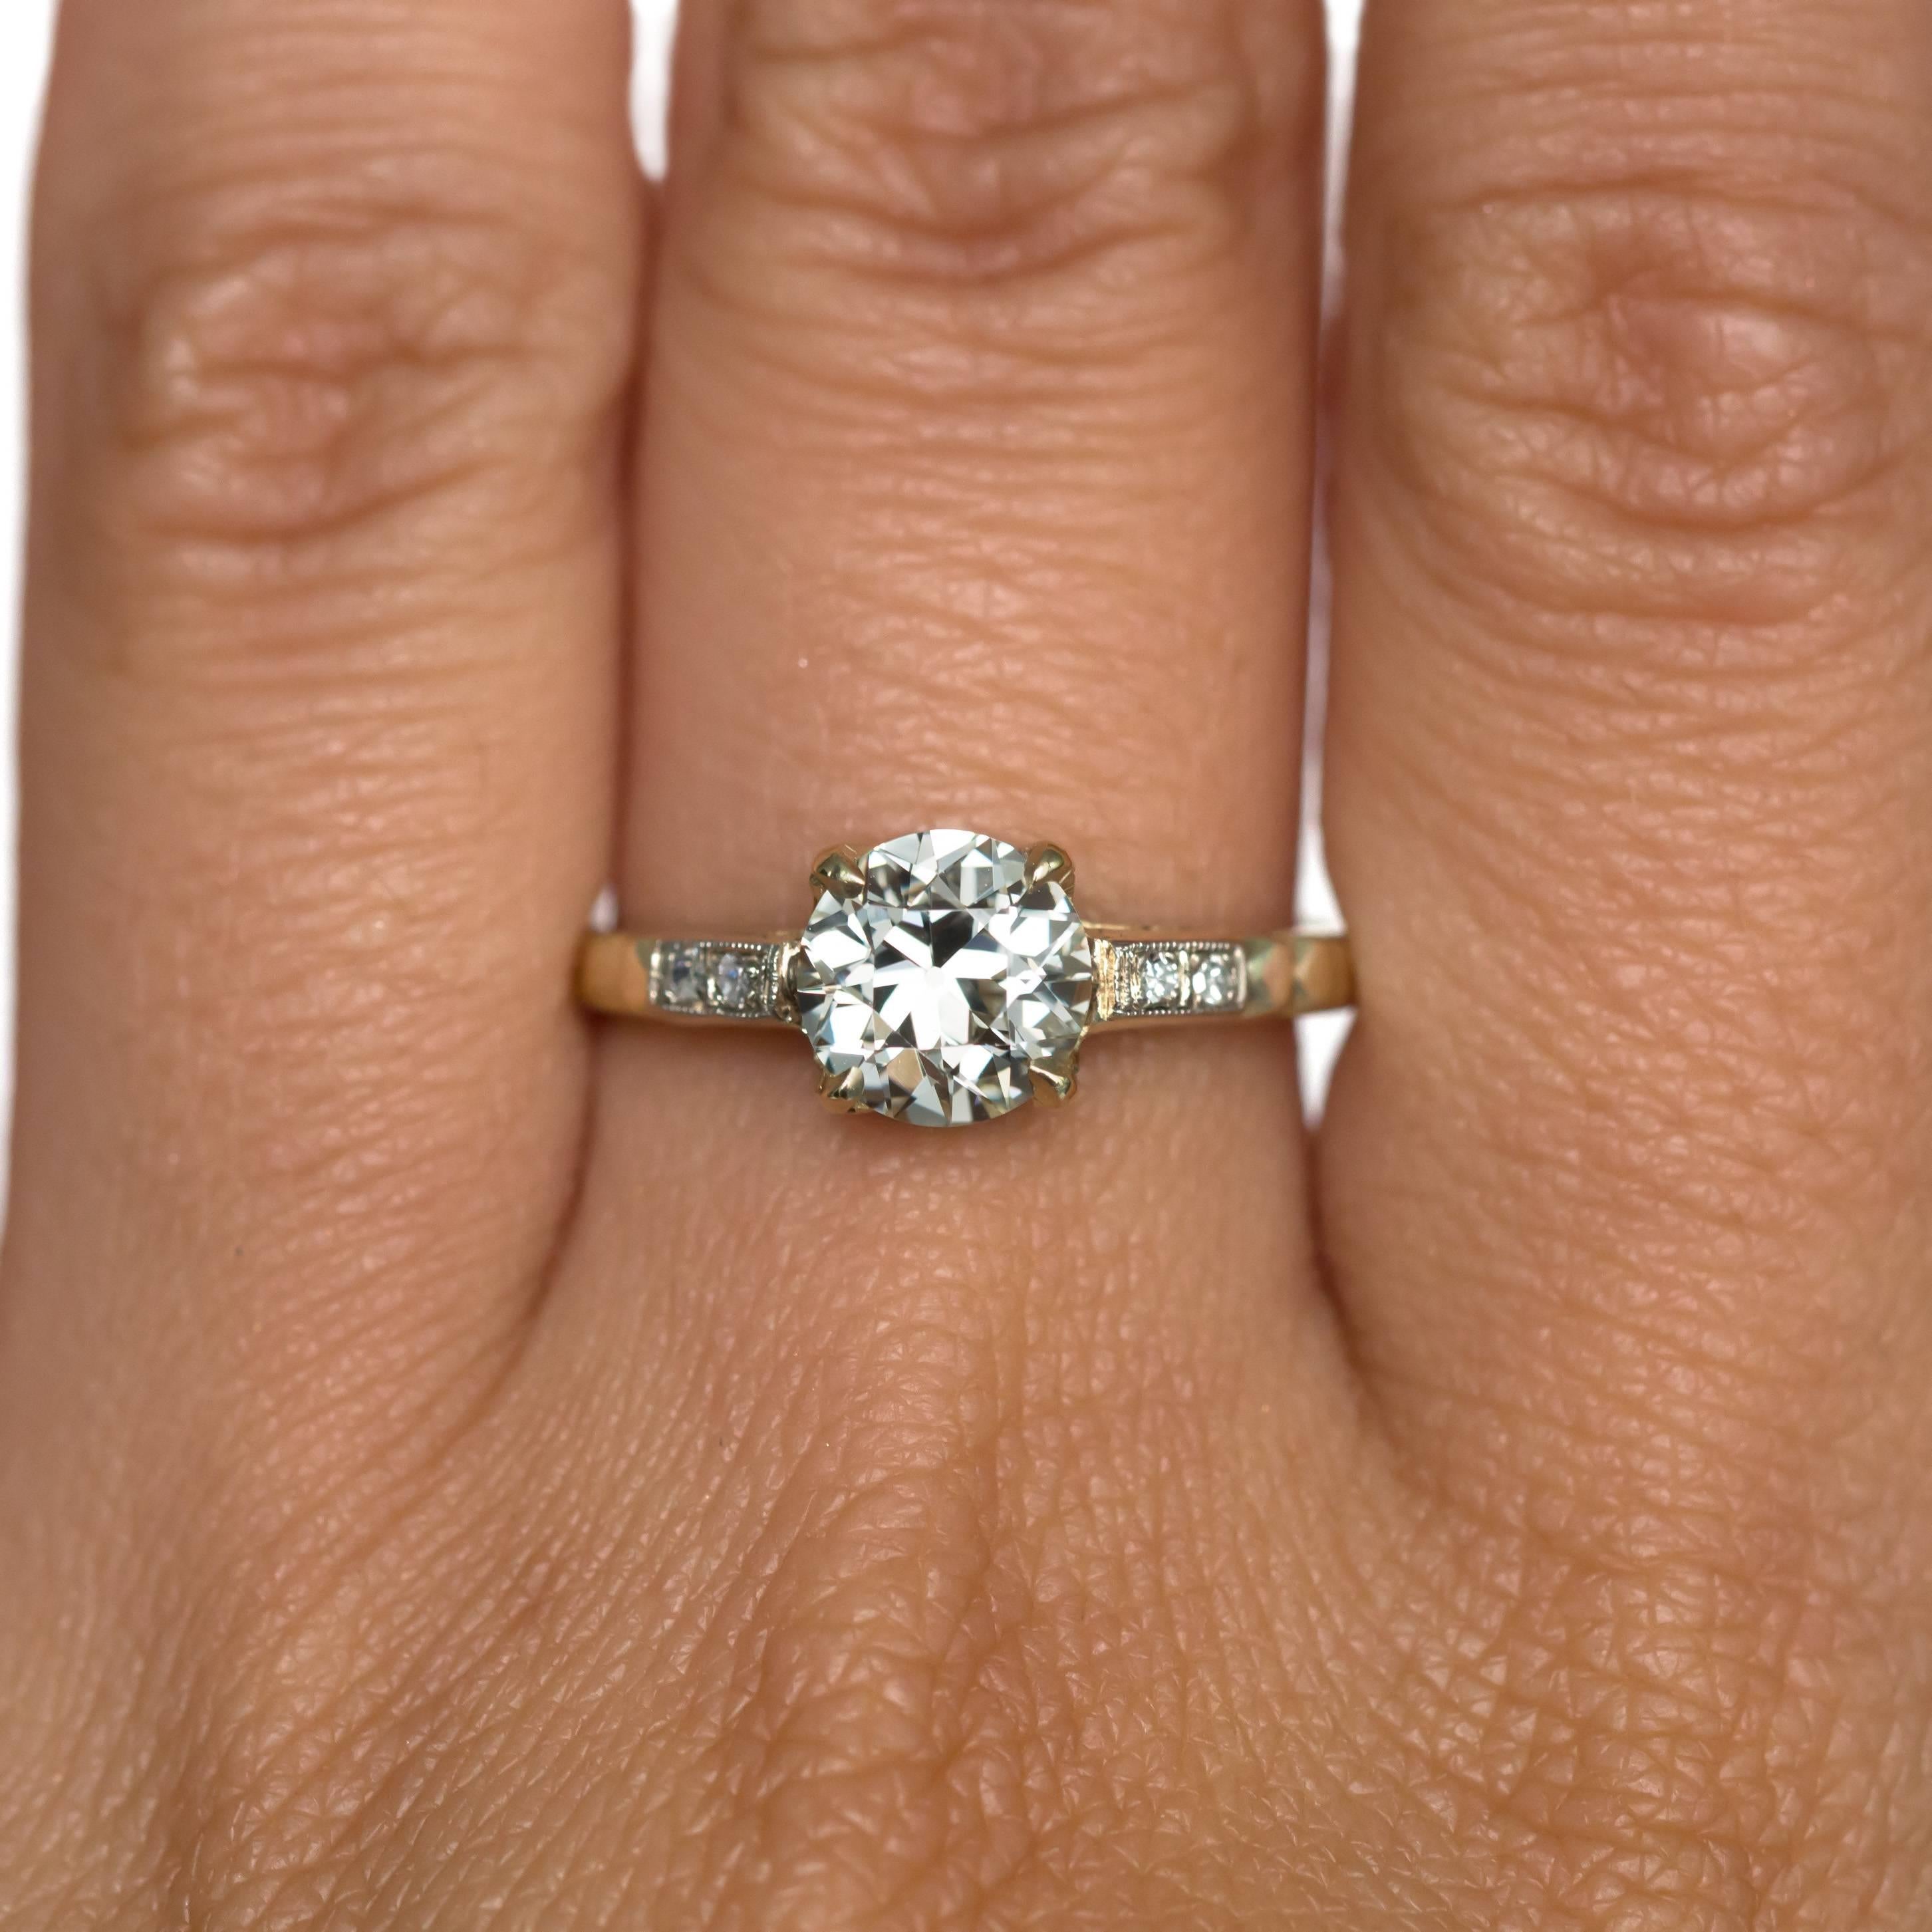 Women's 1910 Edwardian Old European Cut Diamond Engagement Ring